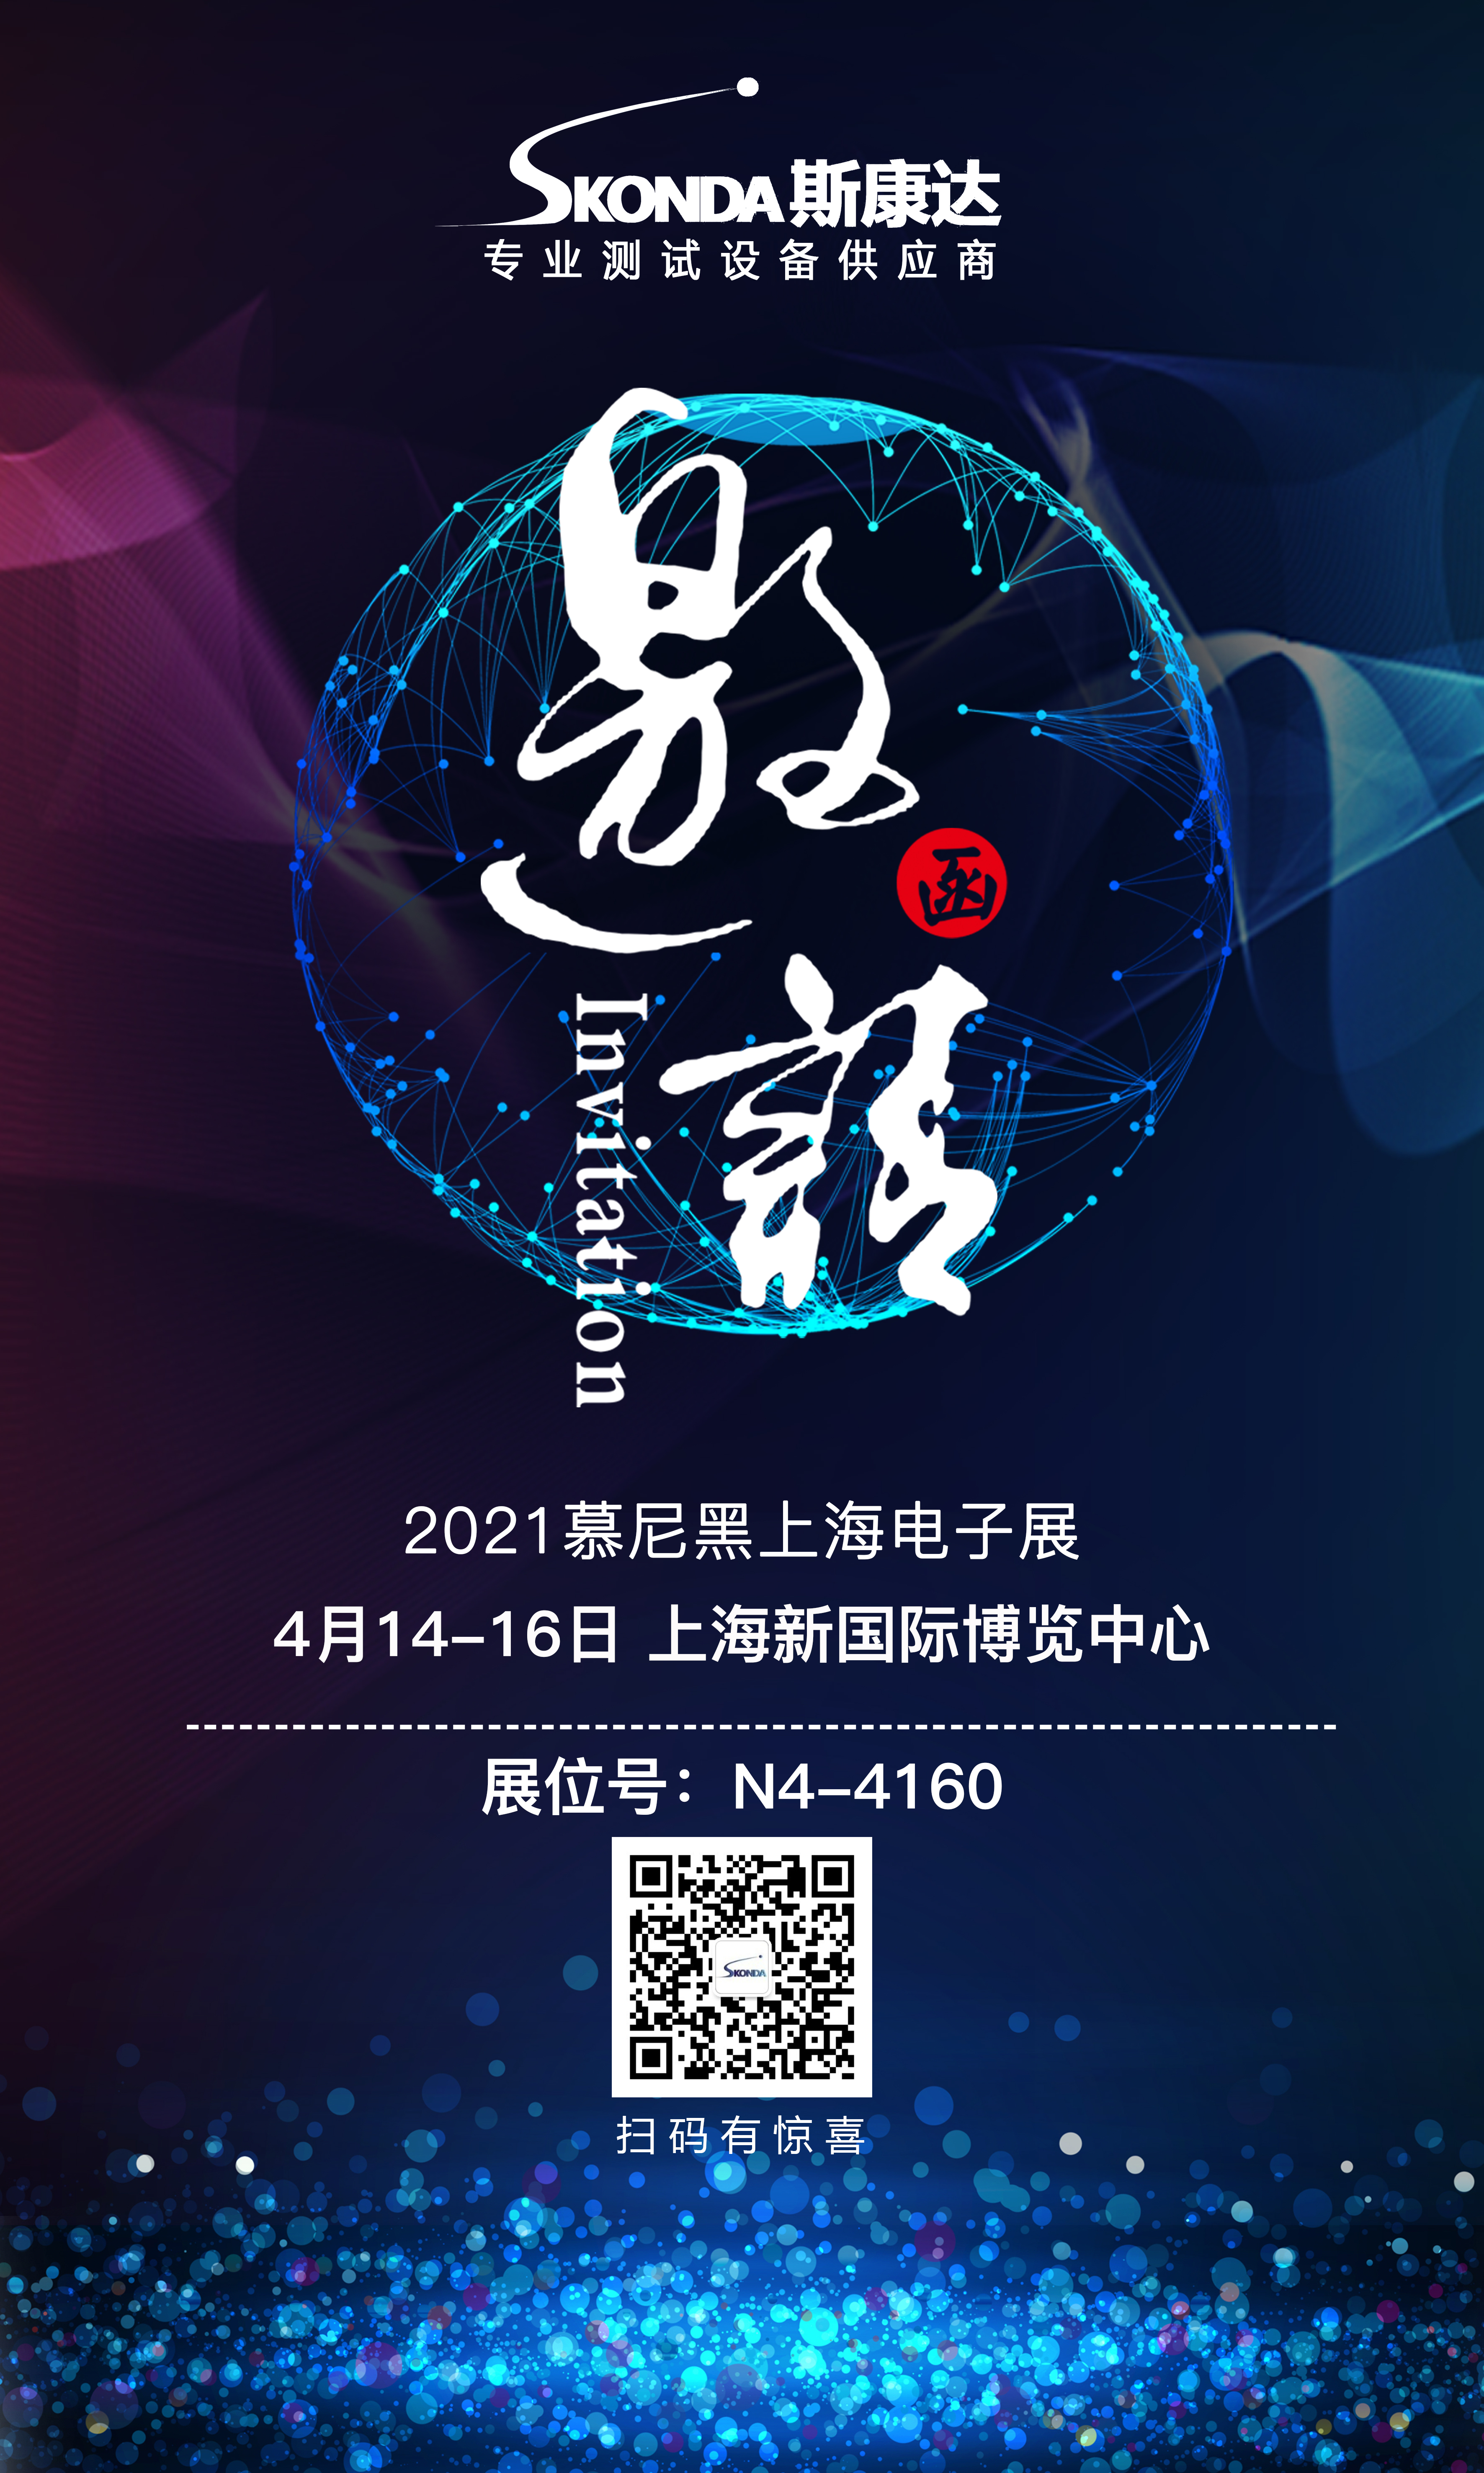 【展会邀请】斯康达诚邀您参加4月14-16日慕尼黑上海电子展！(图1)